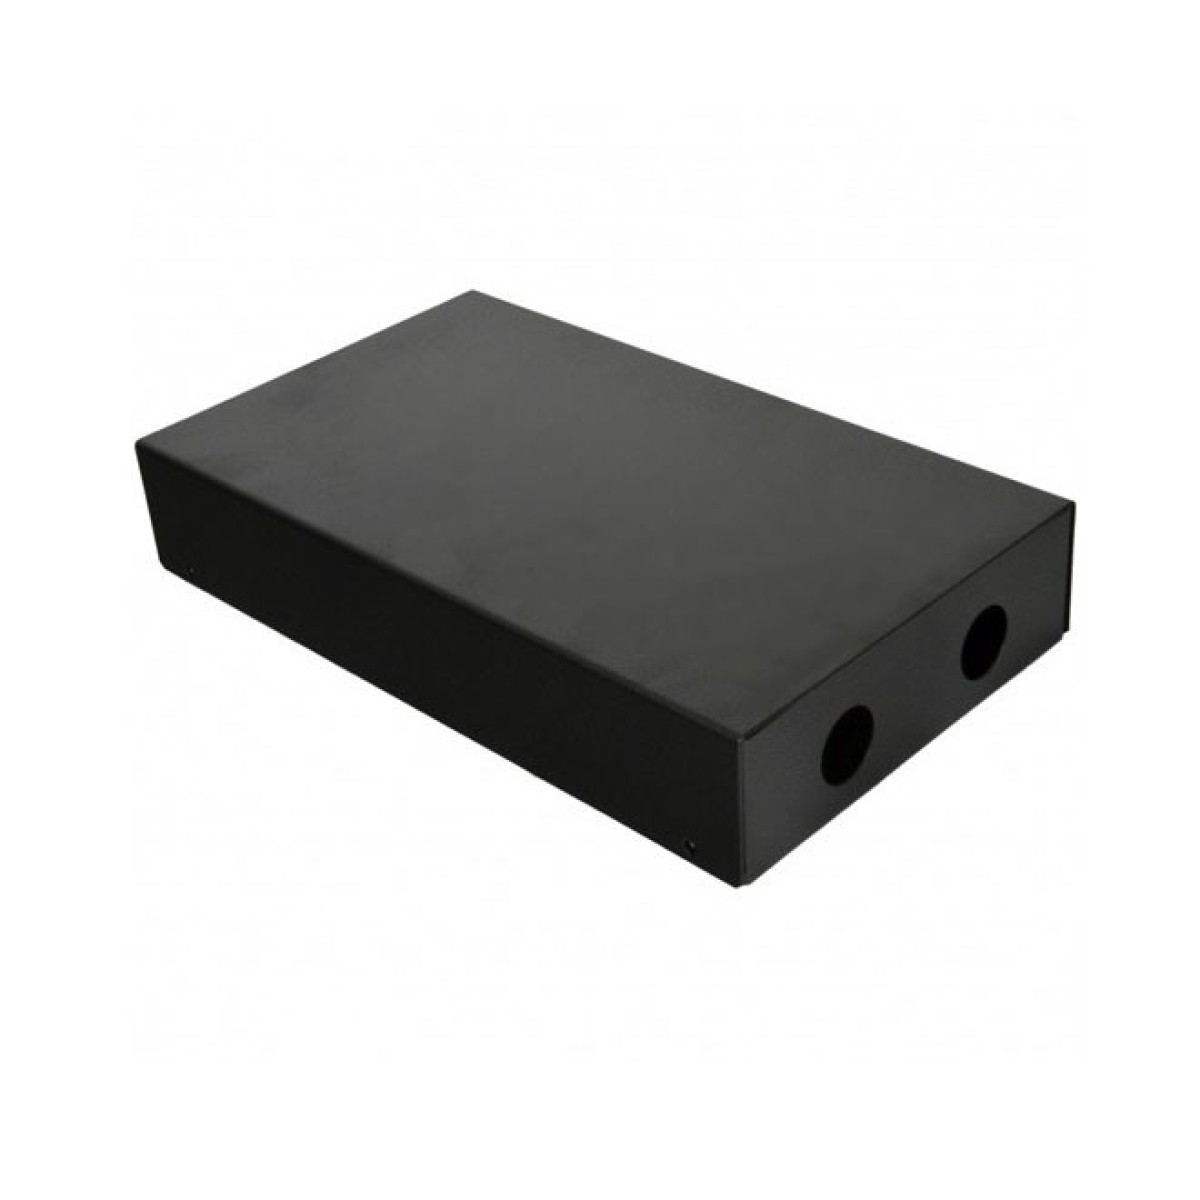 ПО коробка для ПО соединений (для 4-8 SC / FC) без лицевой панели, пустая, черная 256_256.jpg